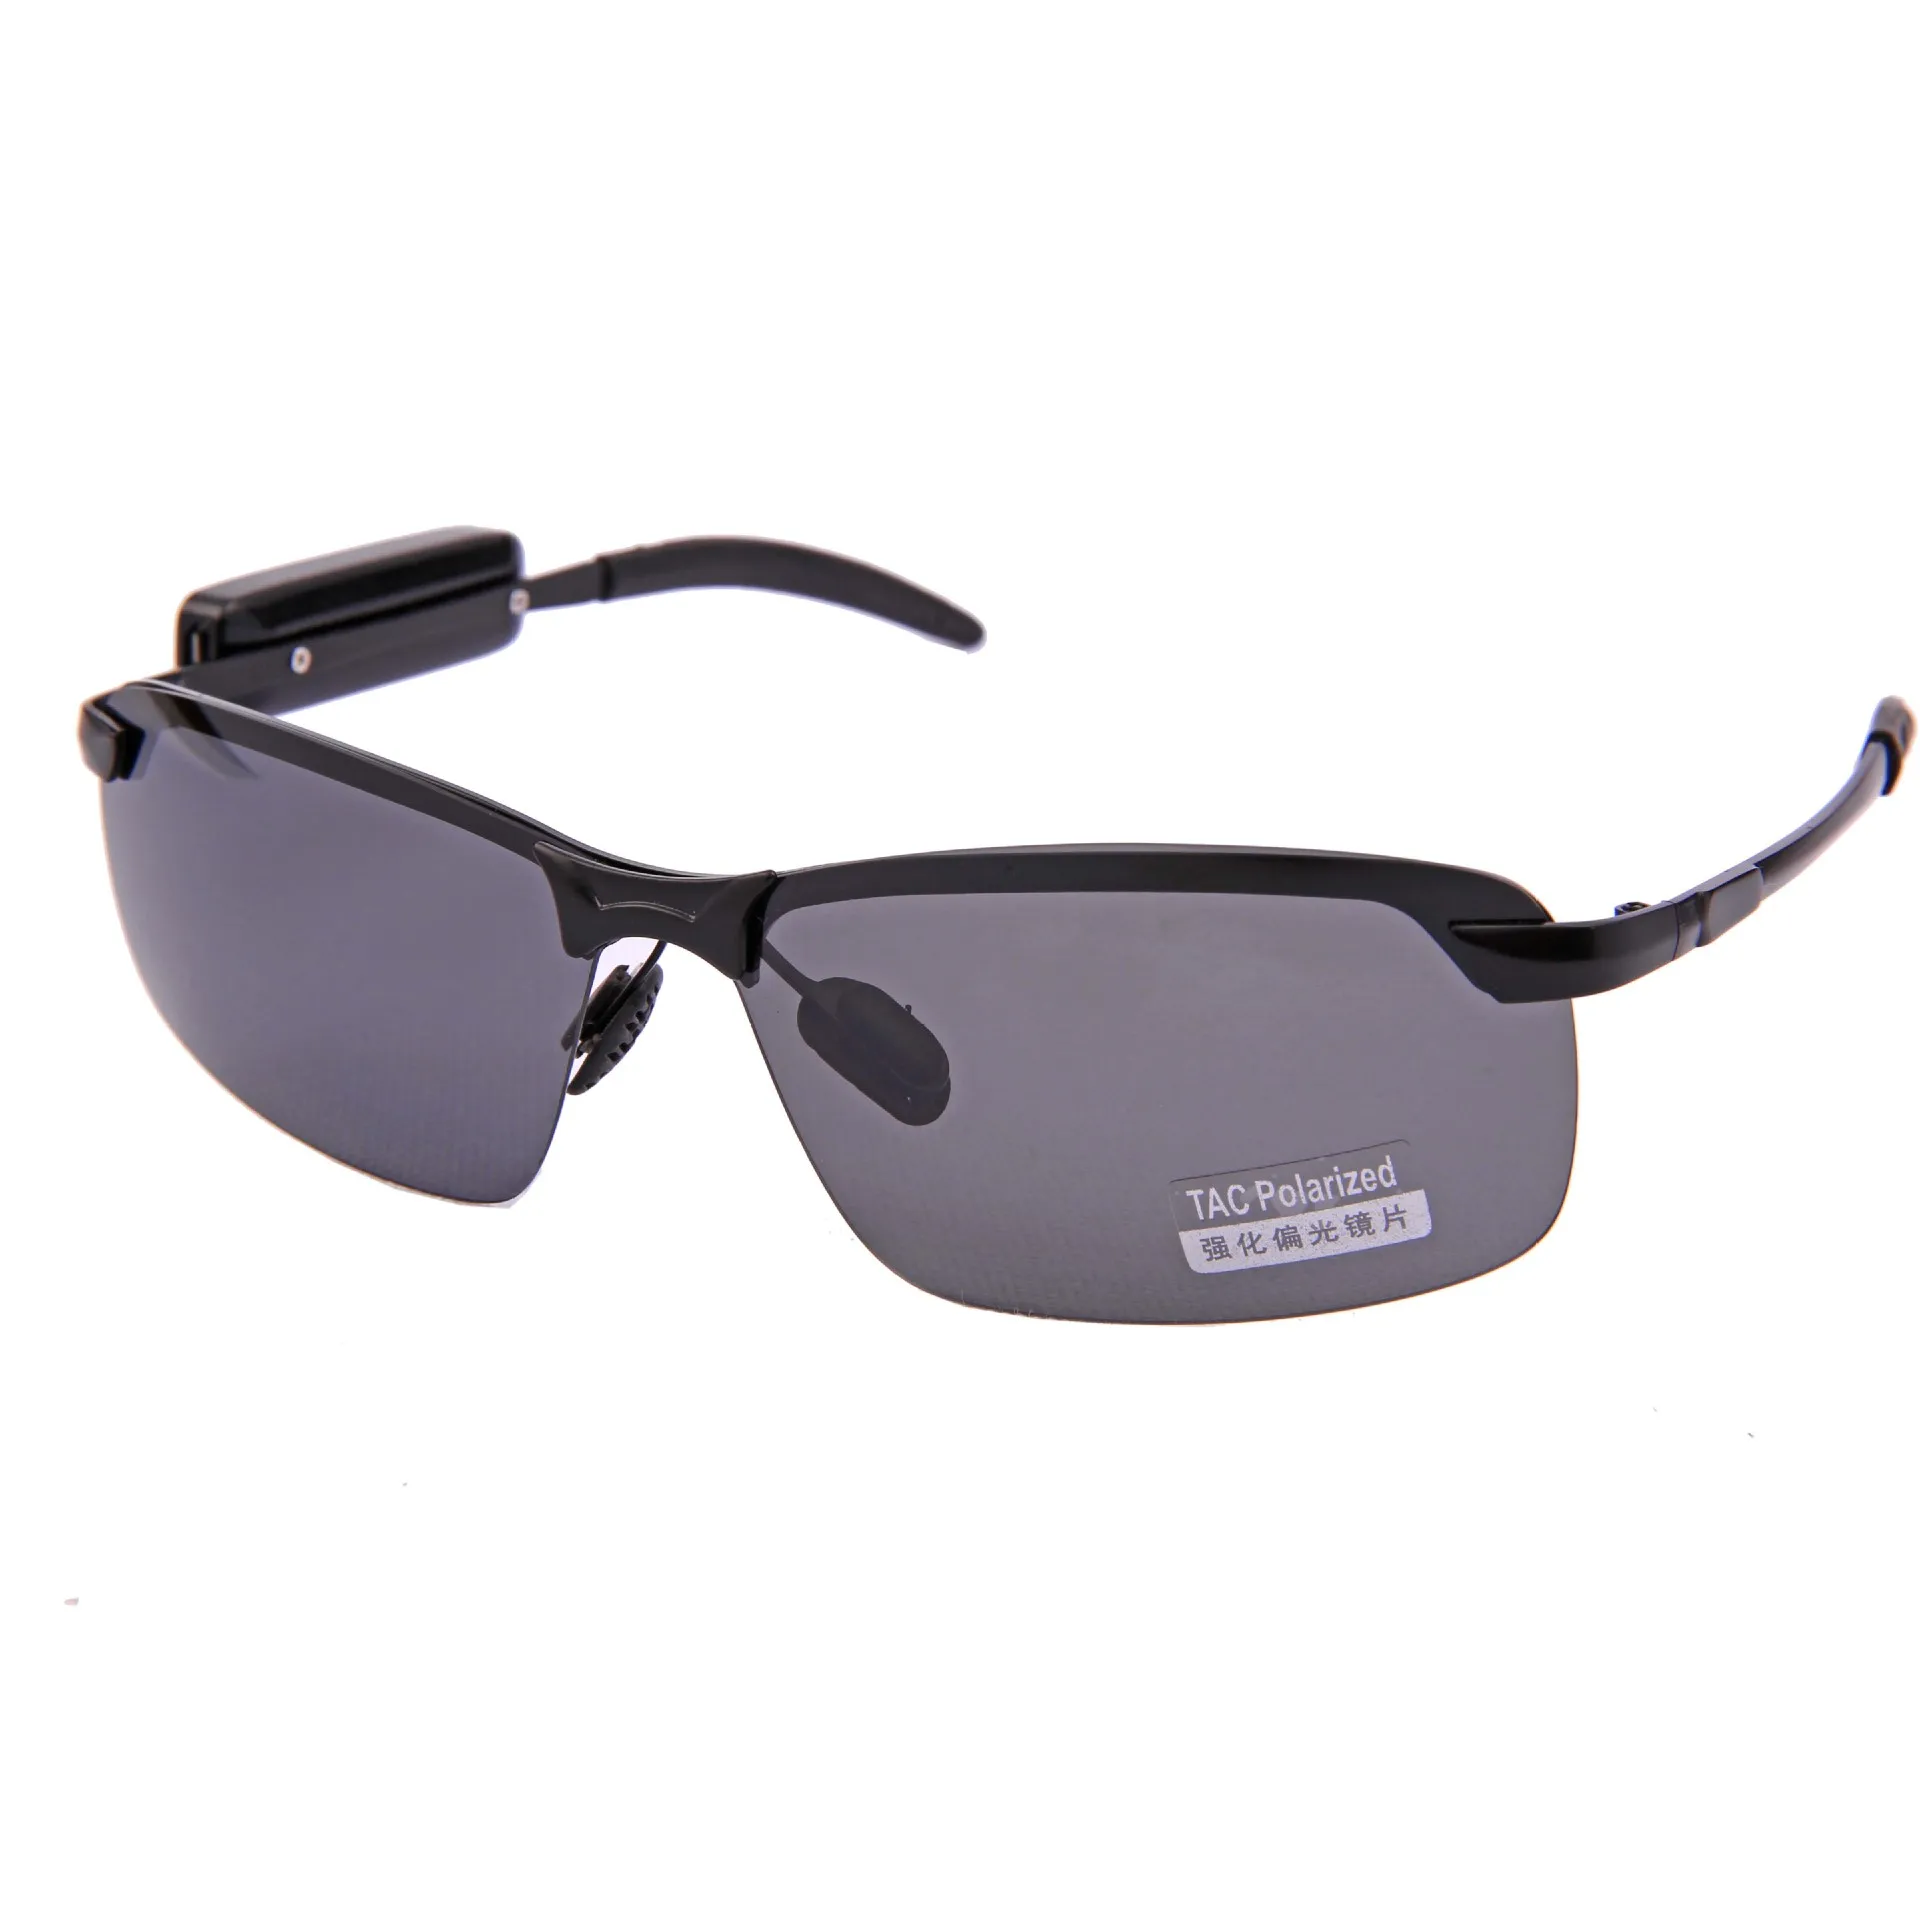 저렴한 신제품 스마트 스테레오 블루투스 안경 레트로 안경 편광 선글라스, 음악 듣기 전화 운전 거울